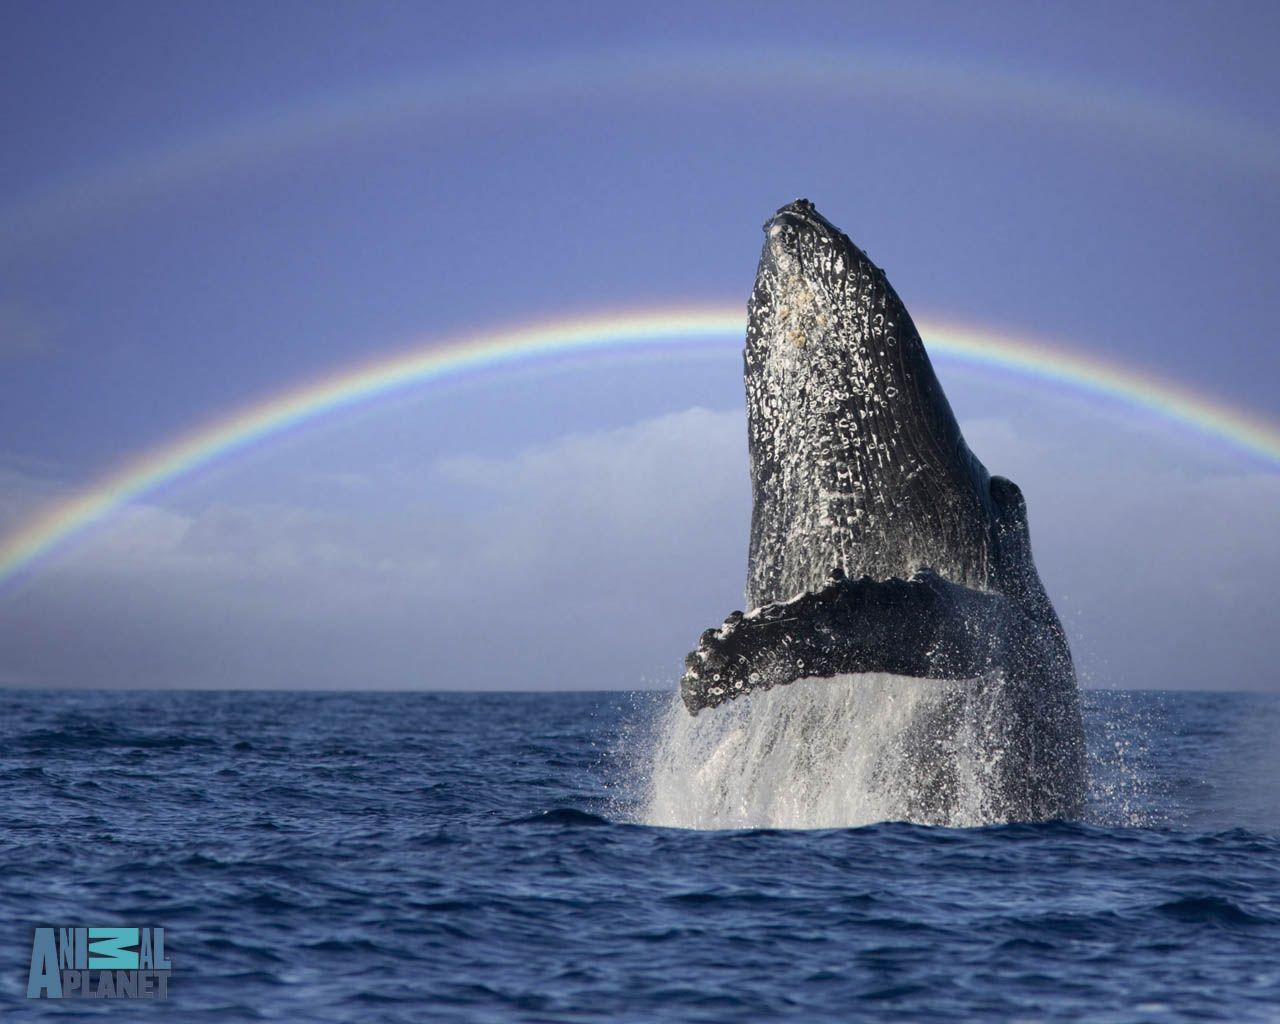 Ngất ngây với bức ảnh cá voi lưng gù phi thân dựng đứng trên mặt biển - Ảnh 2.